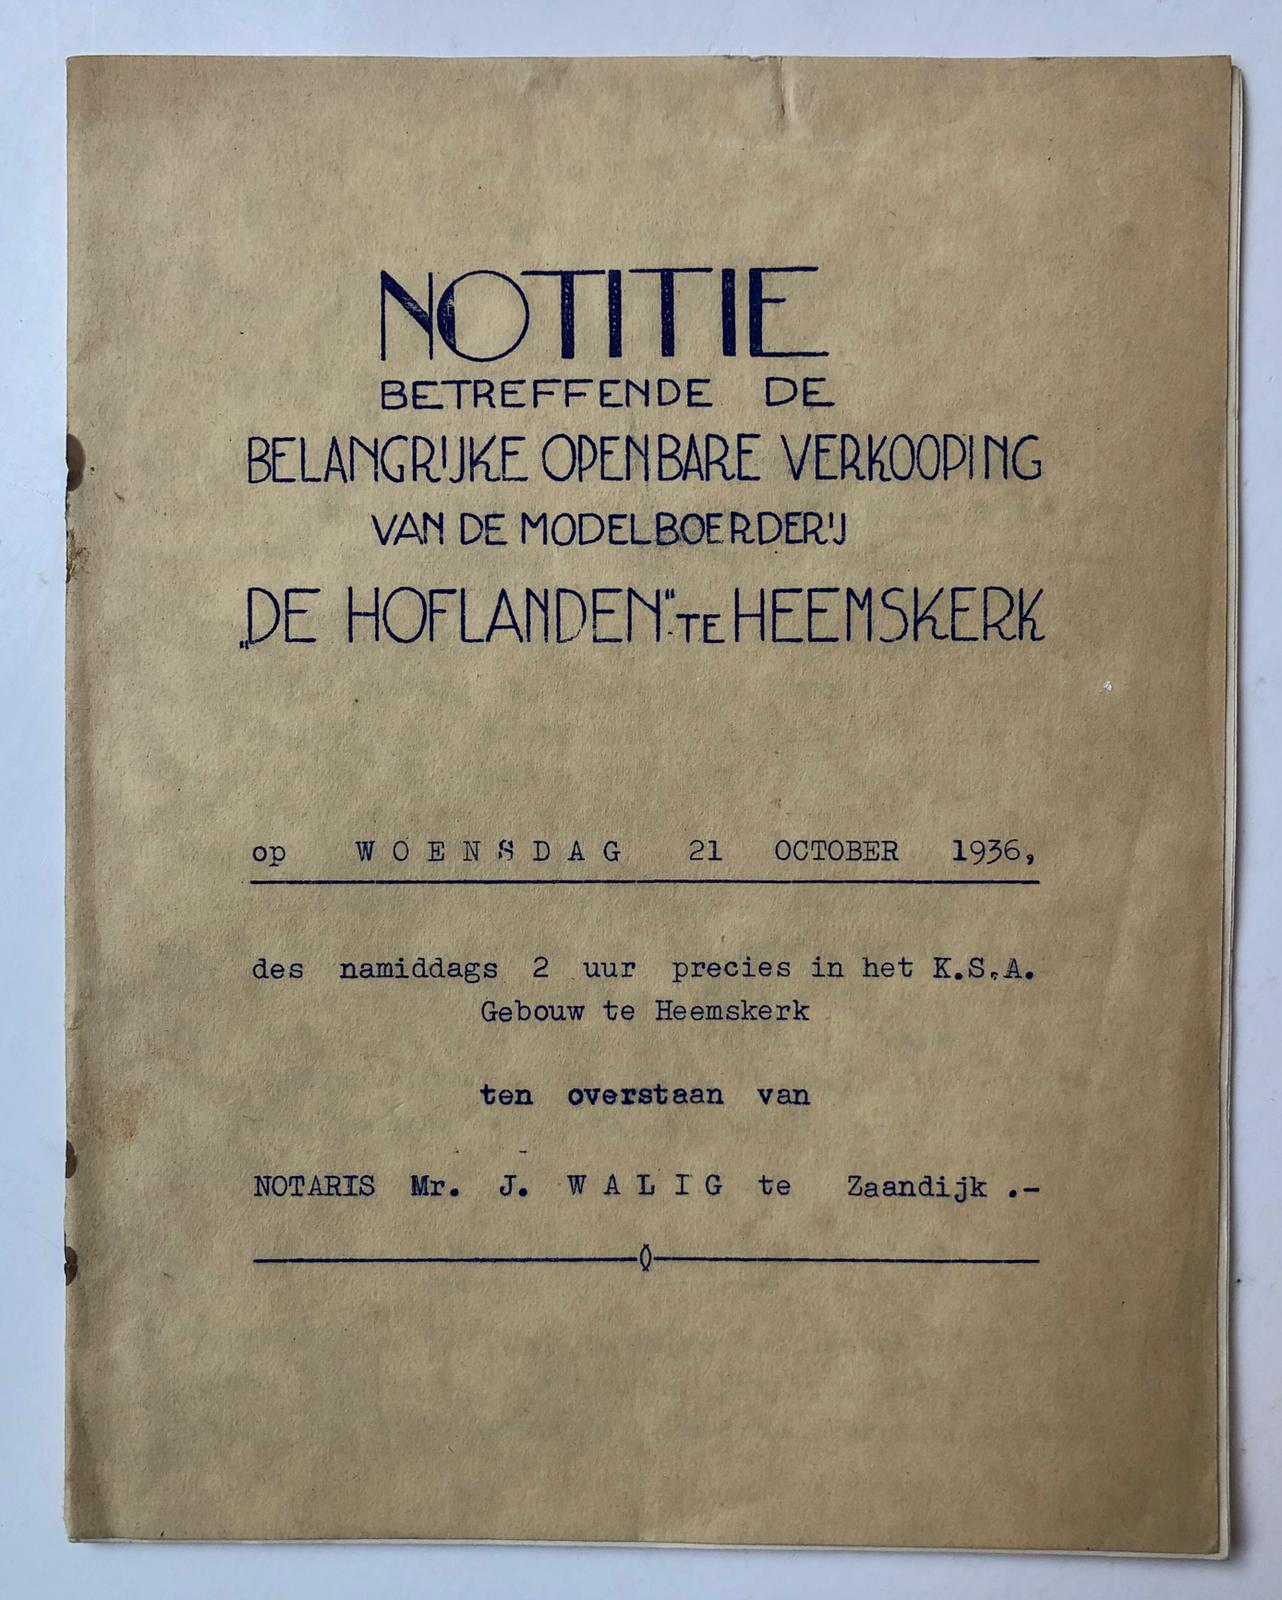 [VEILINGBOEKJE ONROEREND GOED] - [Veilingboekje betreffende onroerend goed Heemskerk, Noord-Holland] Notitie betreffende de belangrijke Openbare Verkooping van de modelboerderij De Hoflanden te Heemskerk, Notaris Mr. J. Walig te Zaandijk, te Heemskerk 1936,